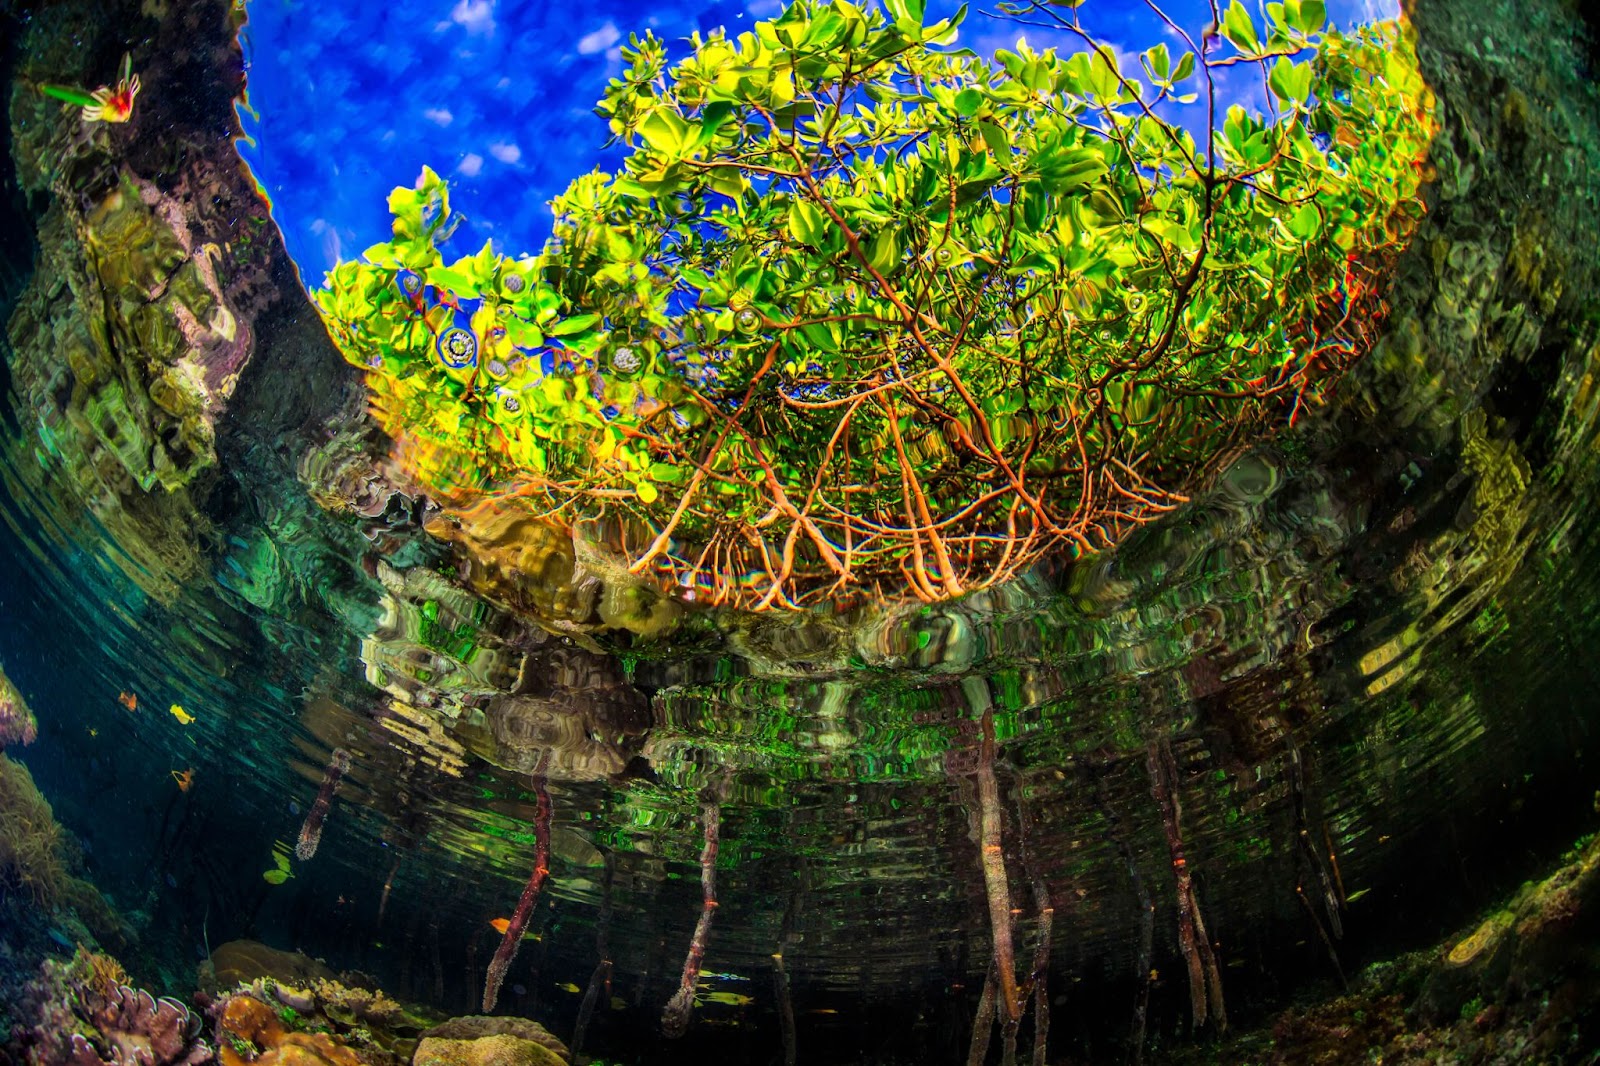 Vue de la mangrove sous l'eau. Les racines brunes mènent à des feuillesd'un vert éclatant, se découpant sur un ciel bleu vif, enracinées dans uneeau verte ondulée.